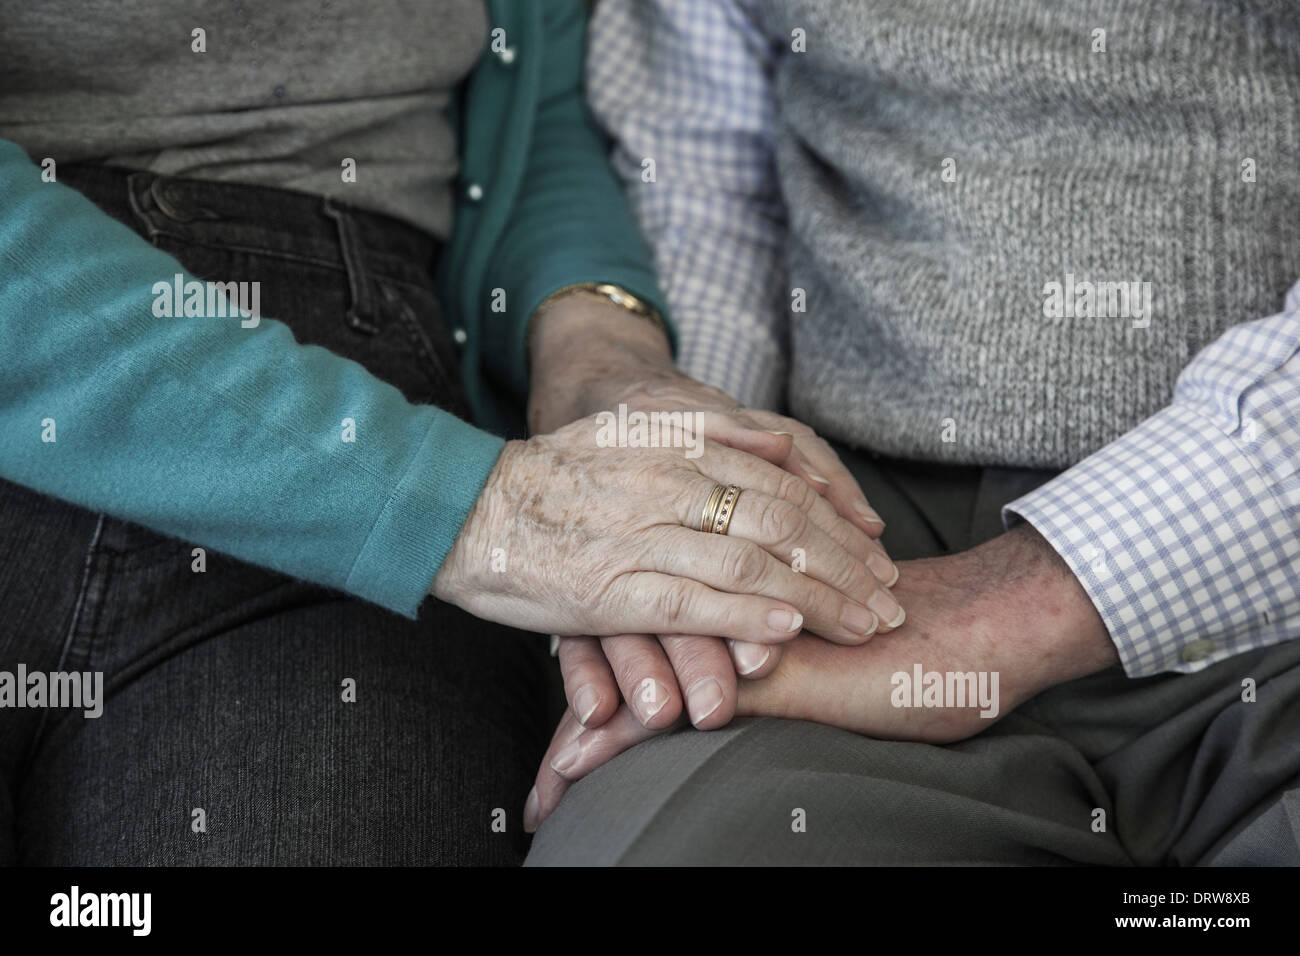 Halten Hände, tröstlich senior Frauenhand beruhigend einen Mann. Landschaft. Stockfoto